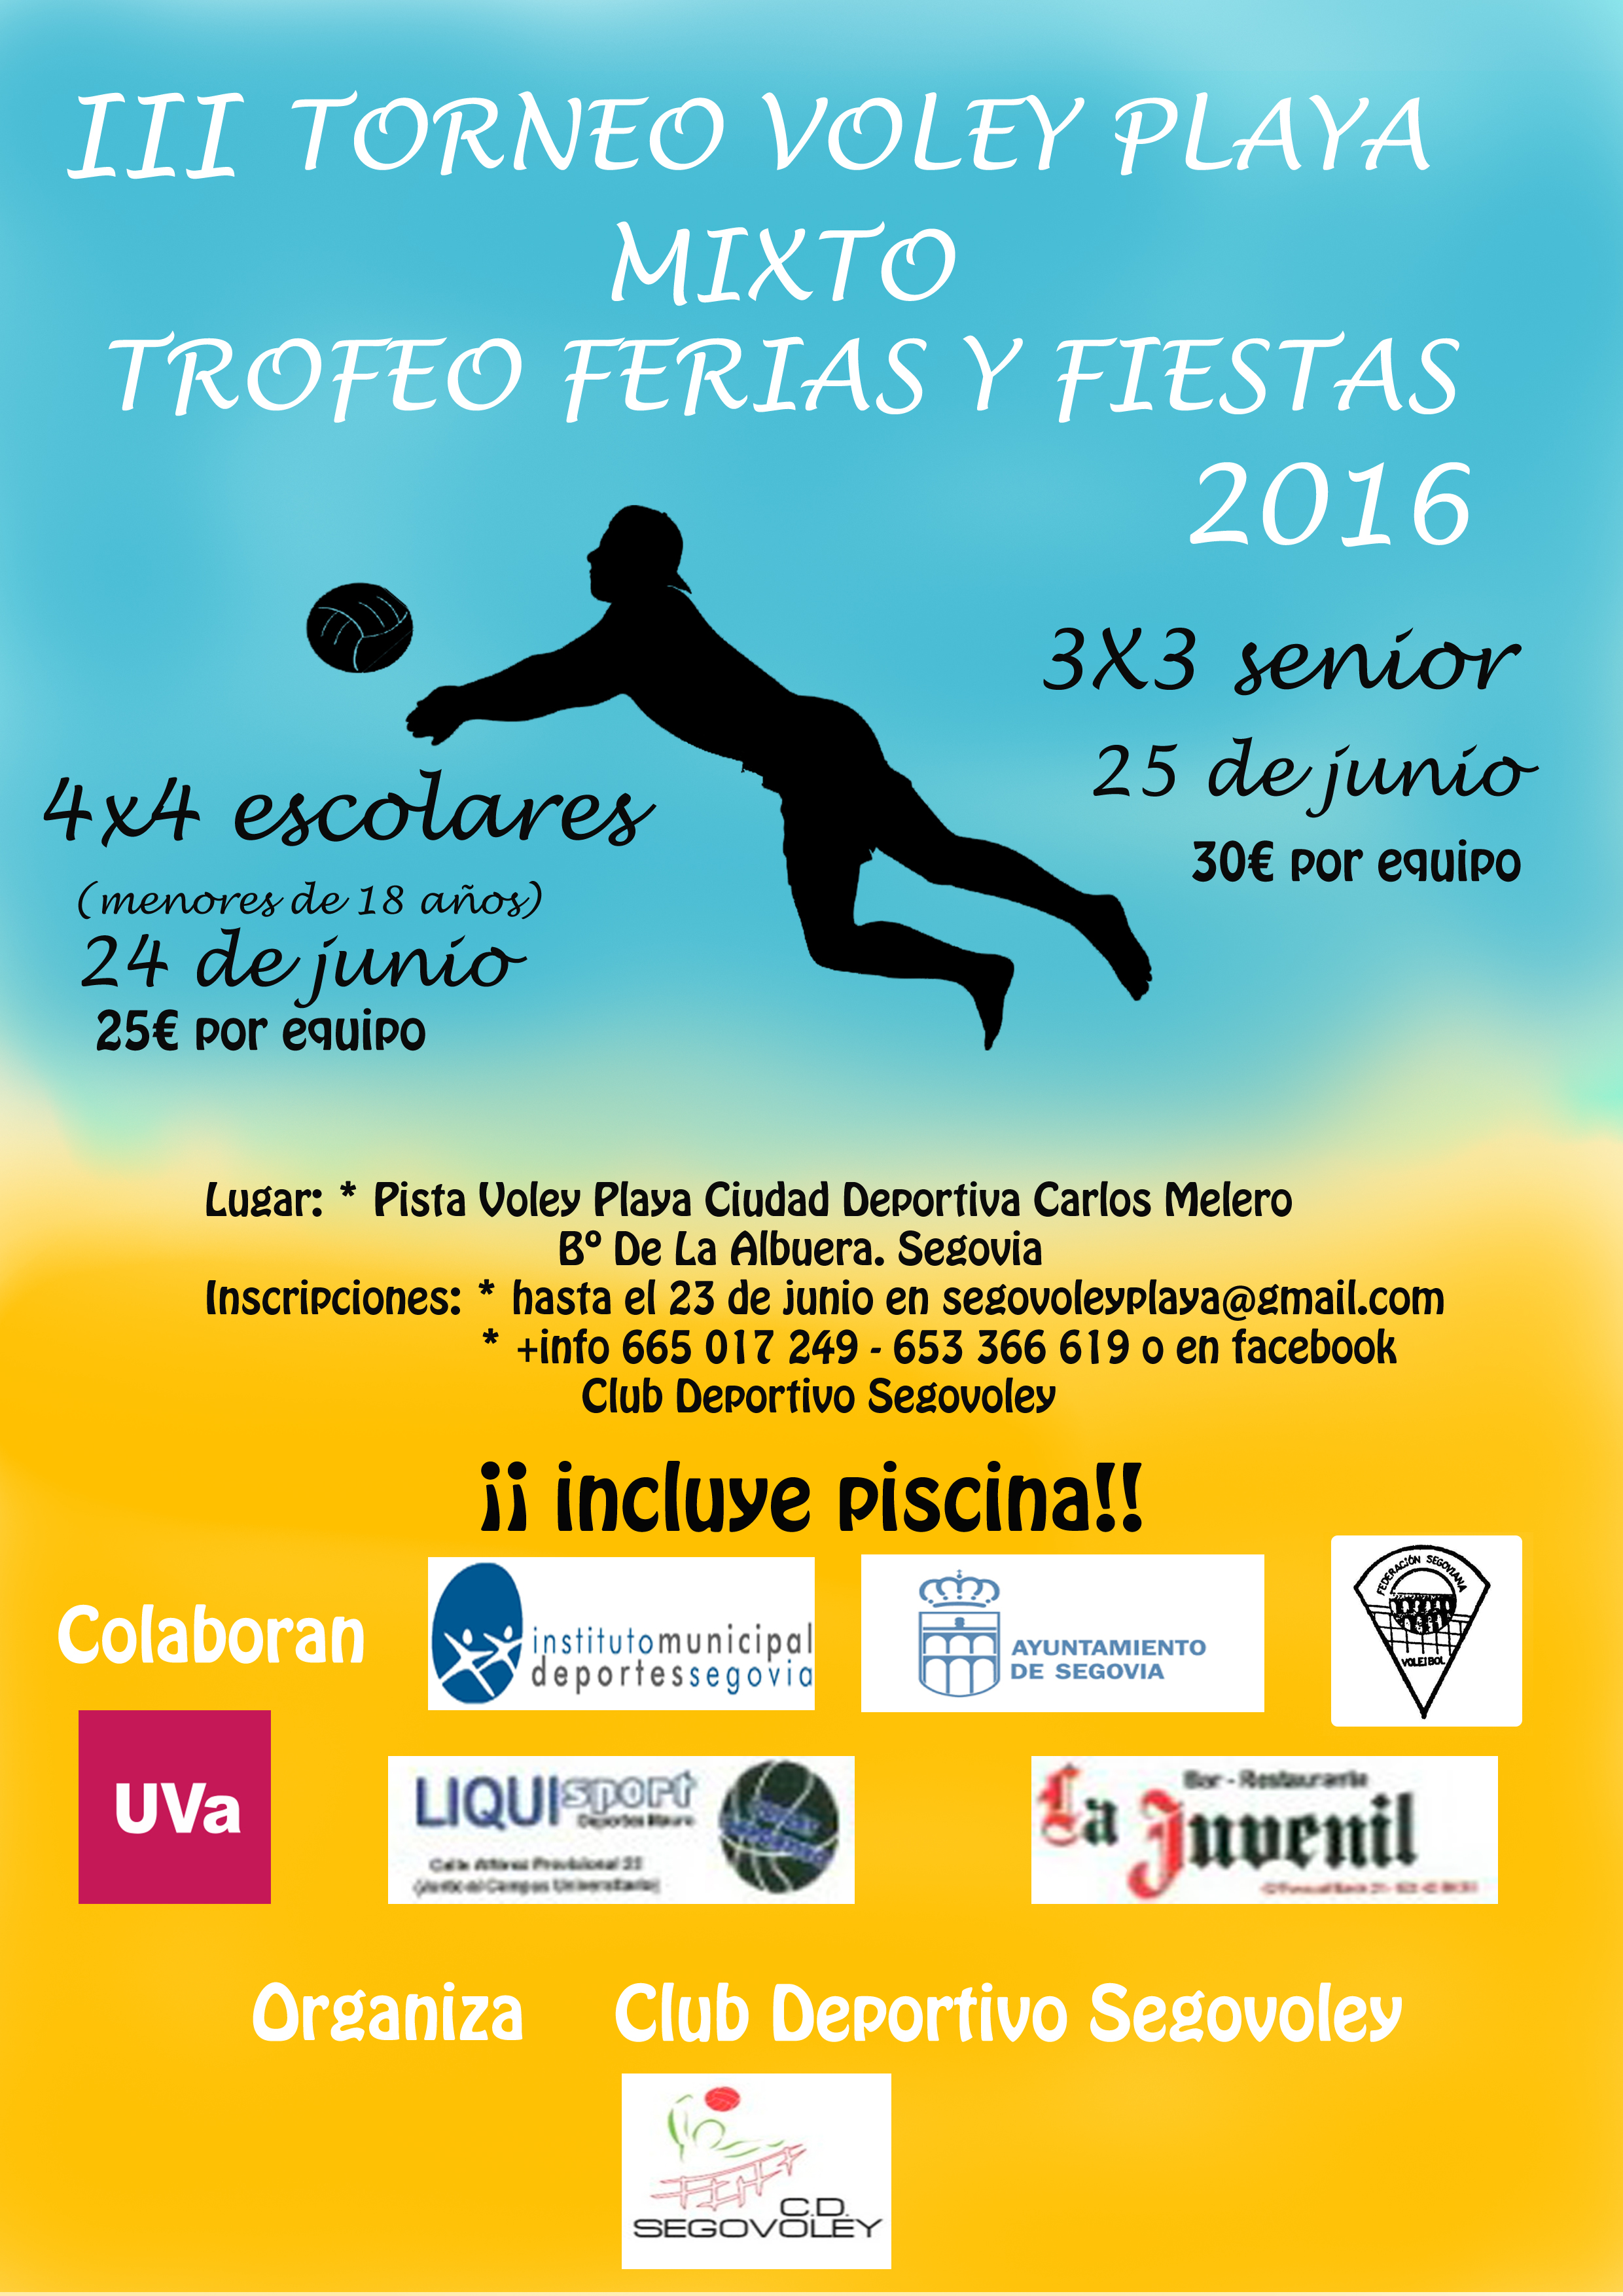 Ferias y Fiestas 2016: III Torneo Voley Playa Mixto